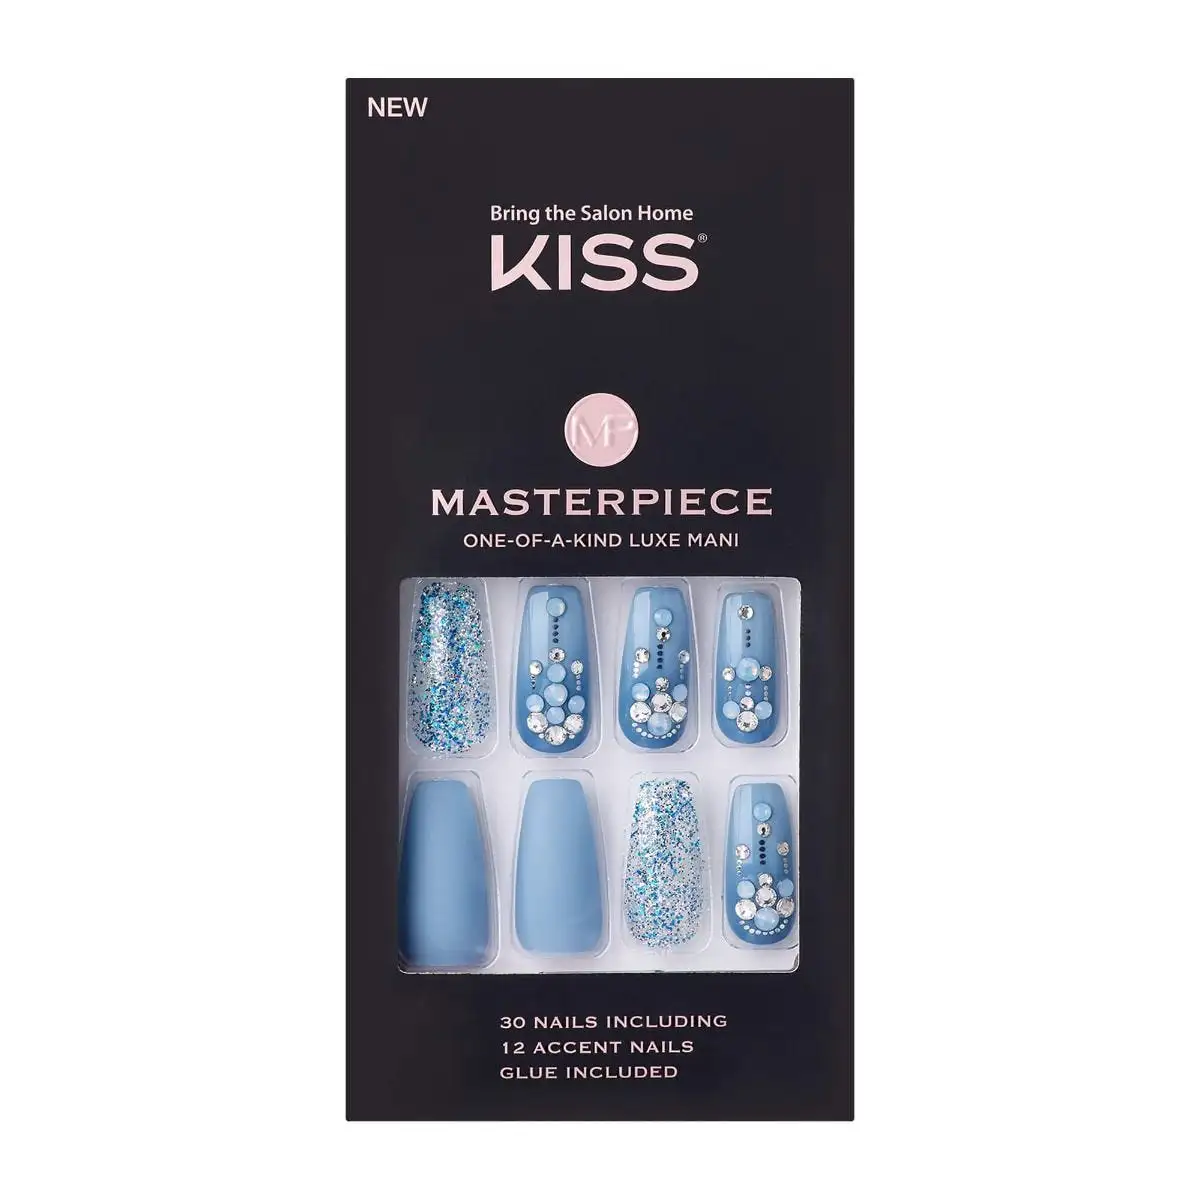 Kiss masterpiece luxury nails kmn104s_1694. DIAYTAR SENEGAL - Là où Chaque Achat a du Sens. Explorez notre gamme et choisissez des produits qui racontent une histoire, du traditionnel au contemporain.